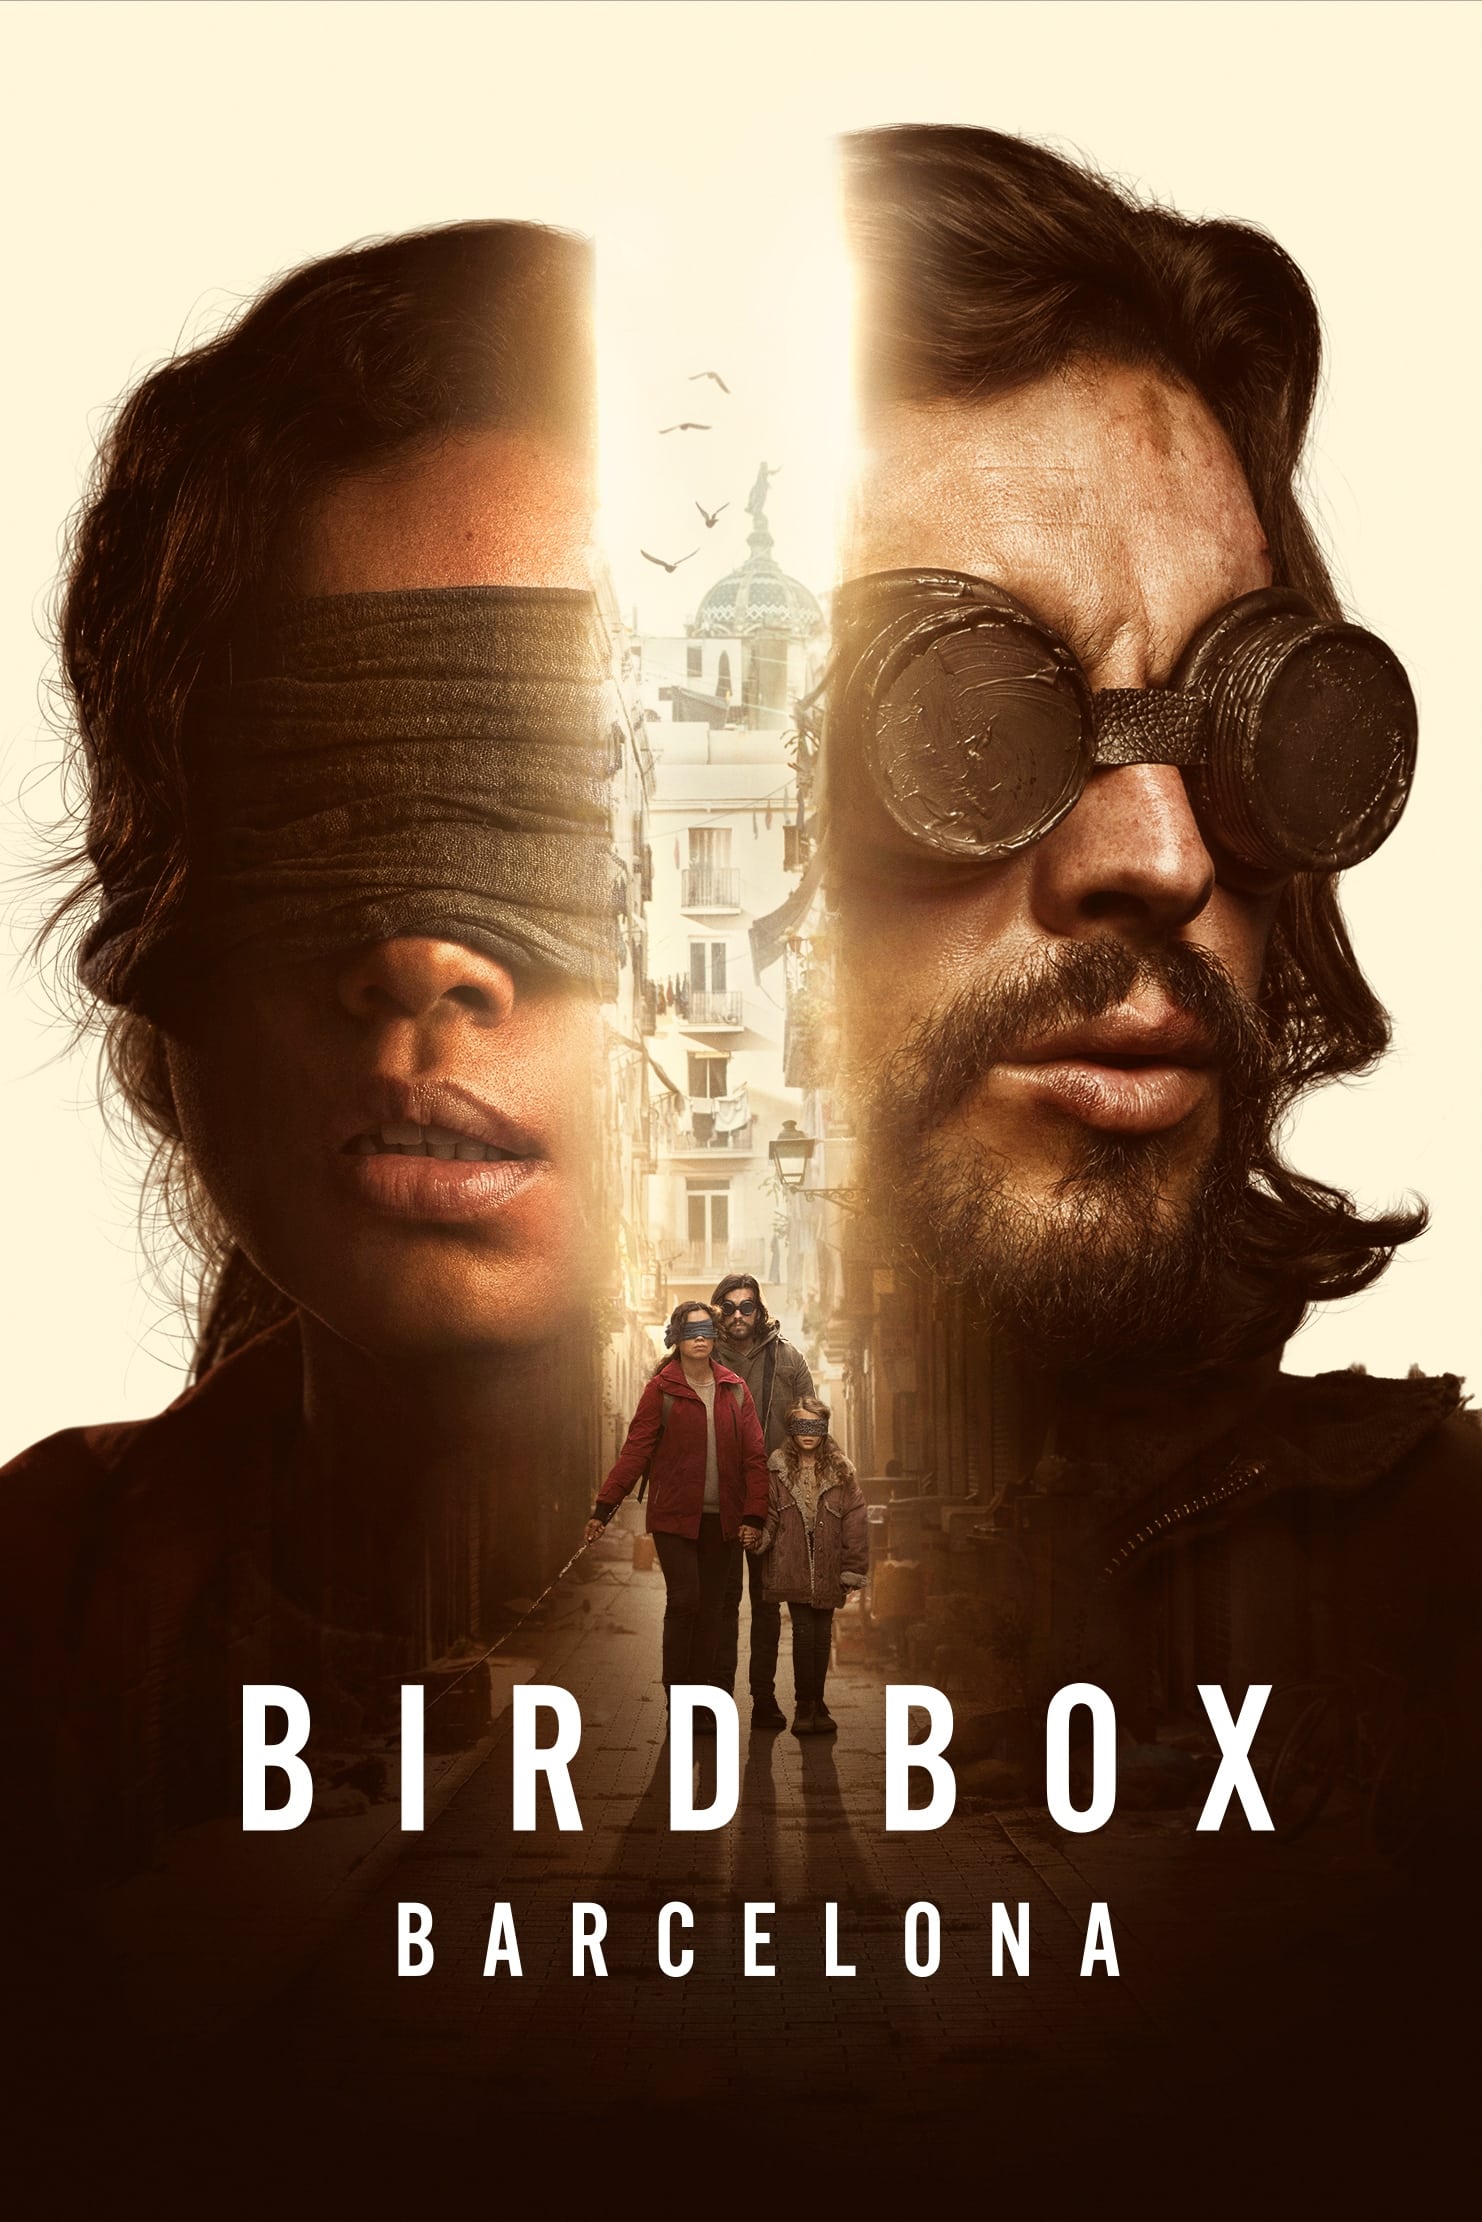 Caratula de Bird Box Barcelona (Bird Box Barcelona) 